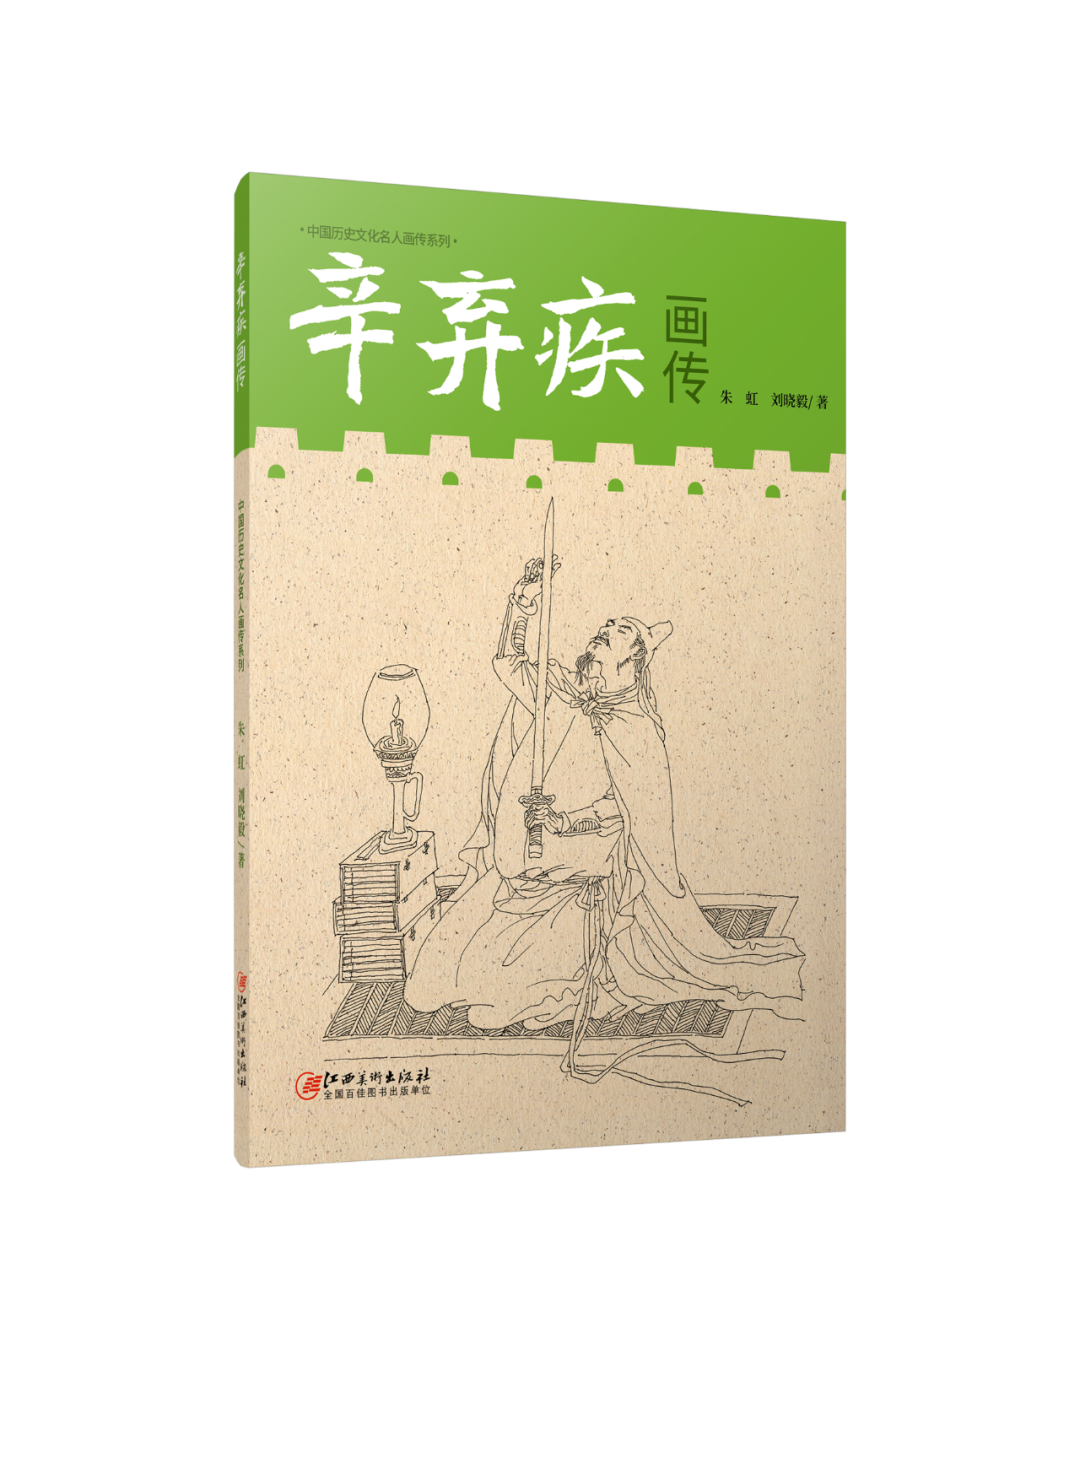 《辛弃疾画传》 朱虹 刘晓毅著 江西美术出版社出版